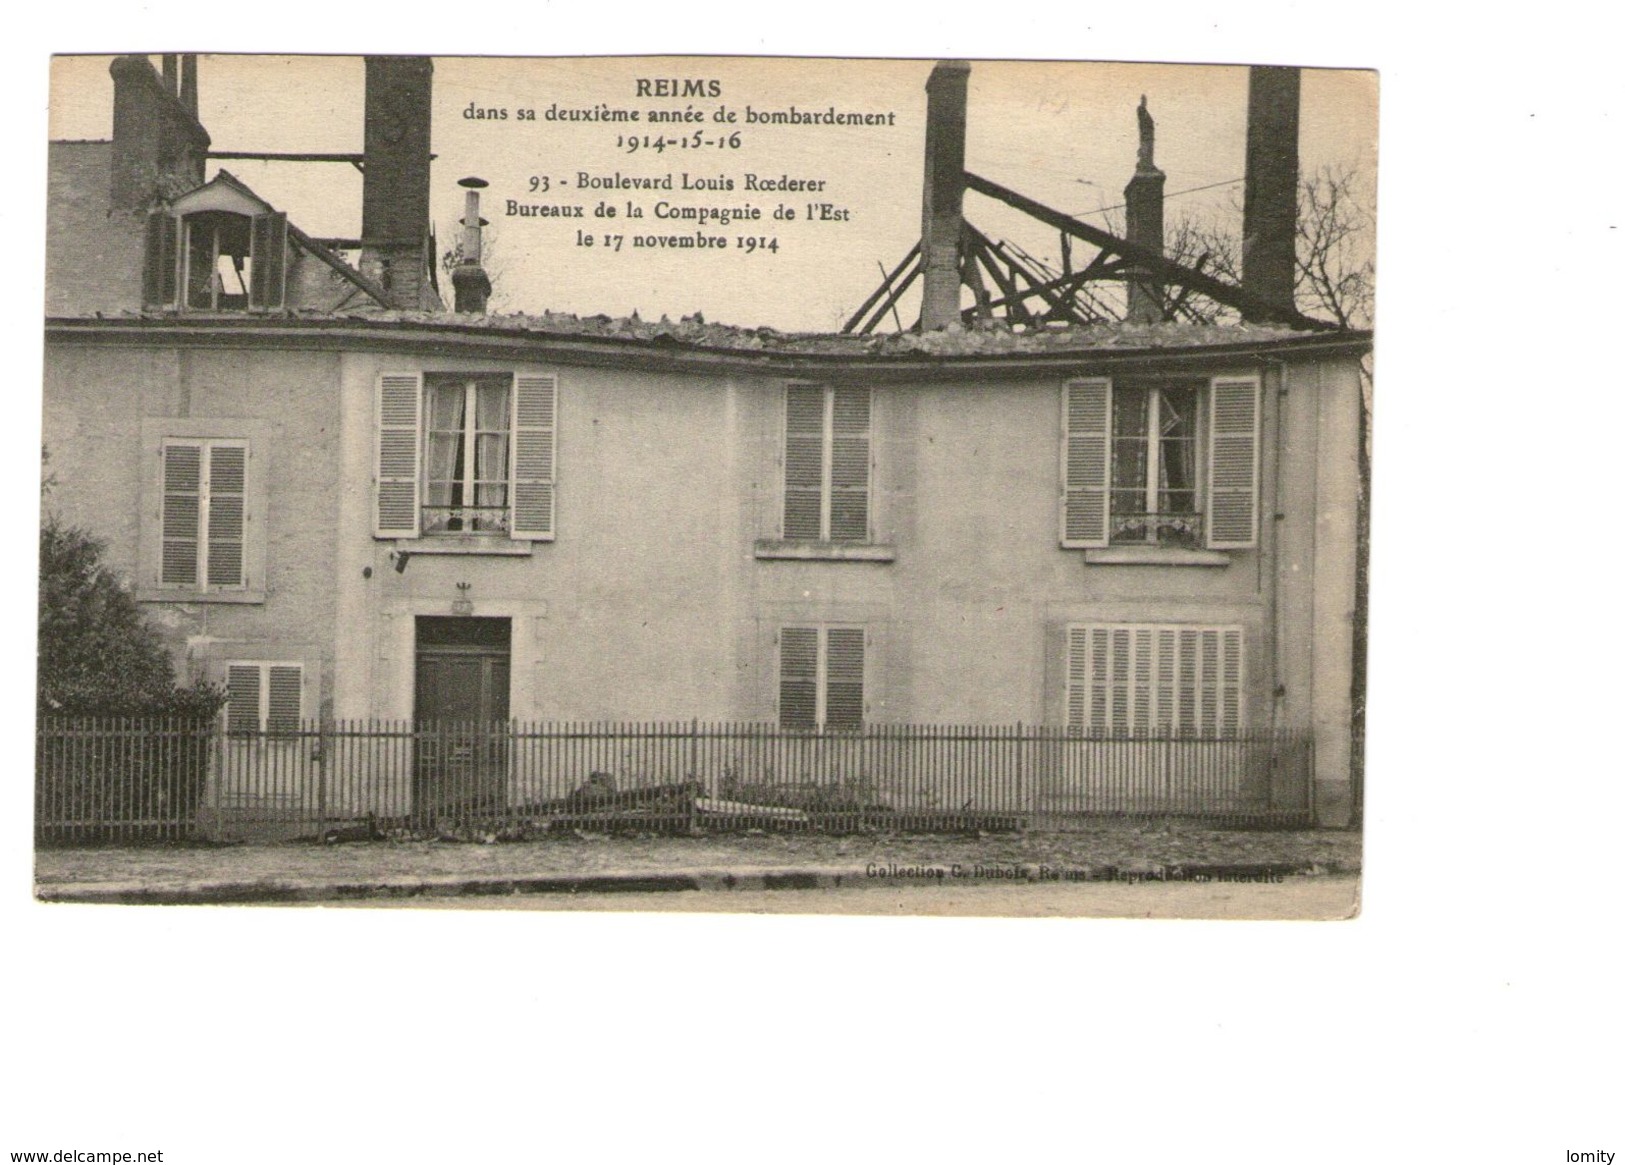 51 Reims Bombardement 93 Boulevard Louis Roederer Bureaux Compagnie De L 'est 17 Novembre 1914 - Reims